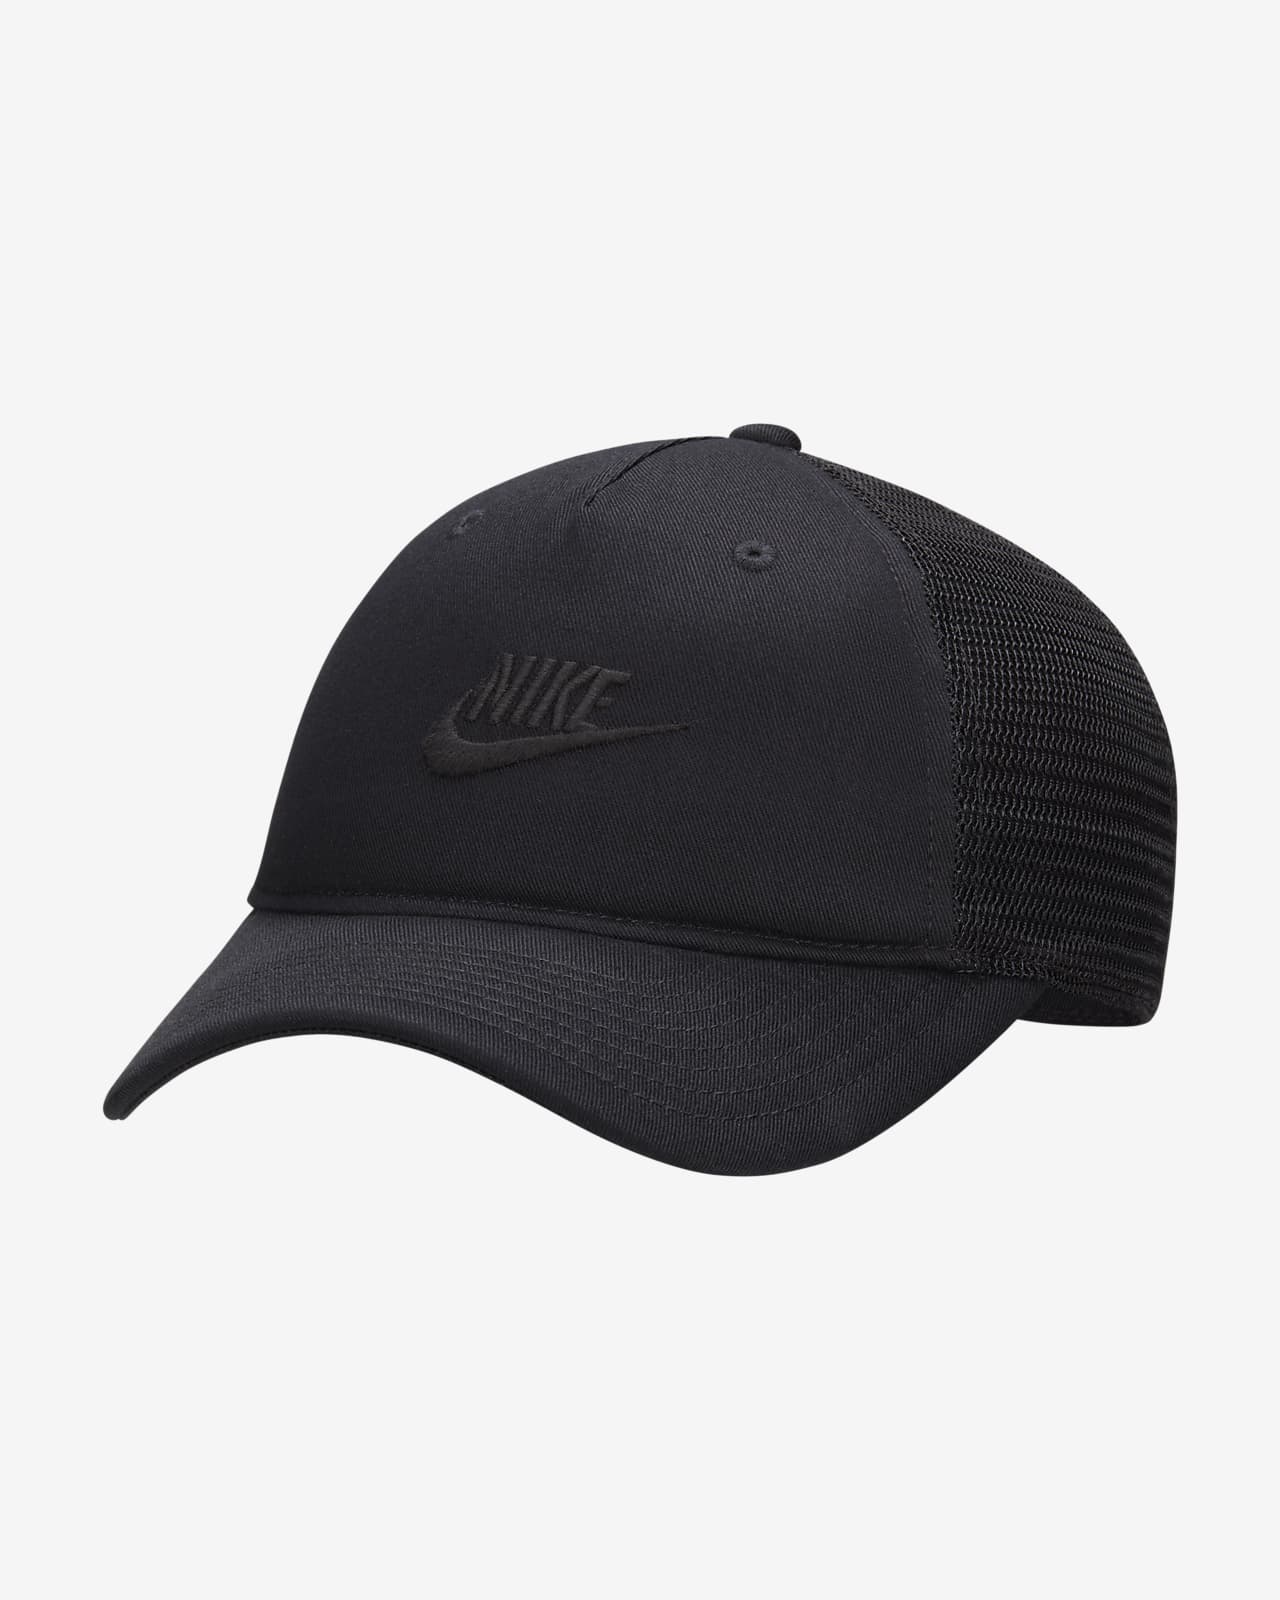 Nike Rise Cap Structured Trucker Cap.